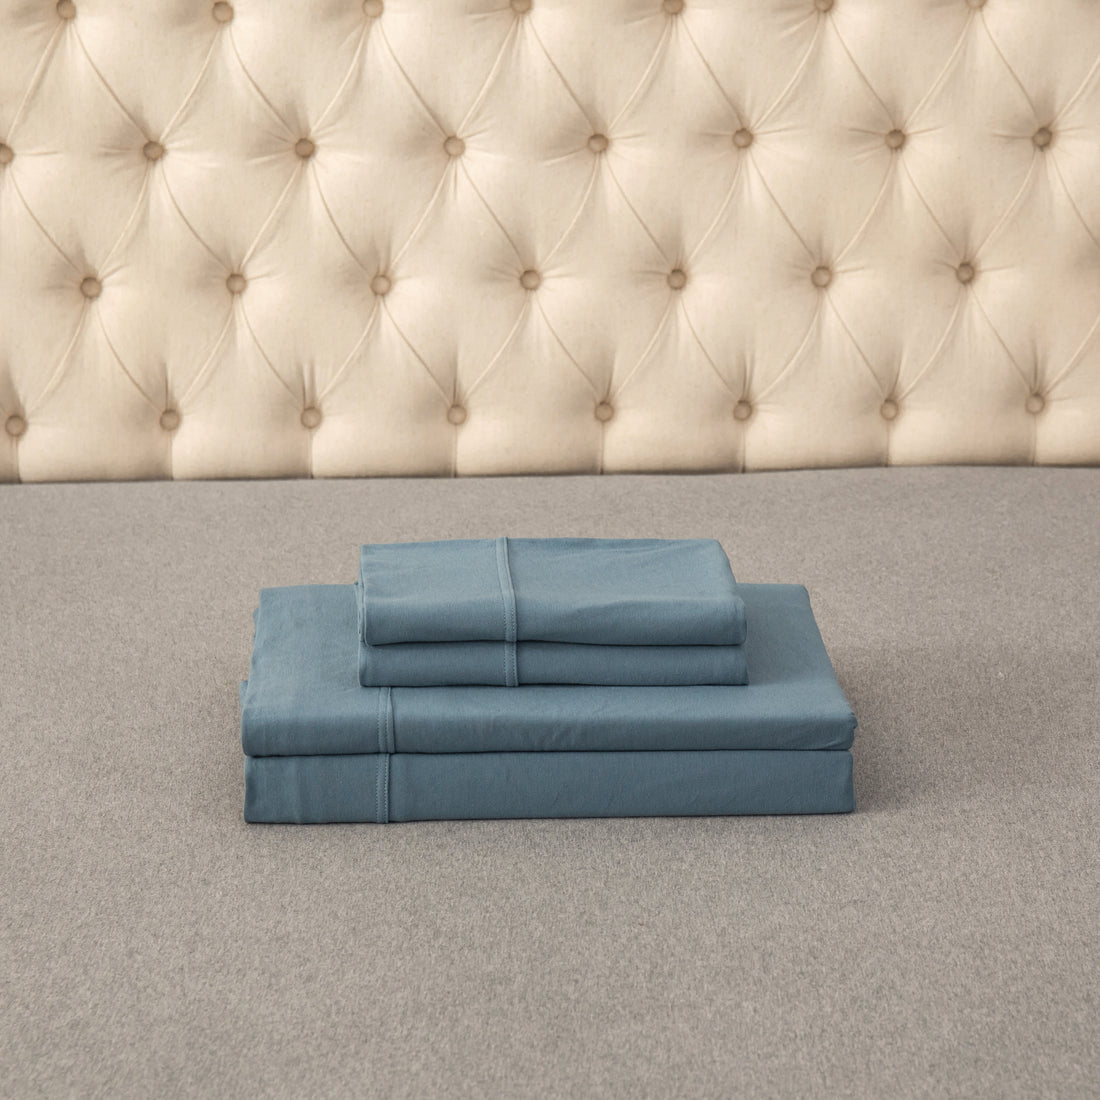 Pure Era - T-shirt Cotton Jersey Knit Bed Sheet Set - Cerulean Blue